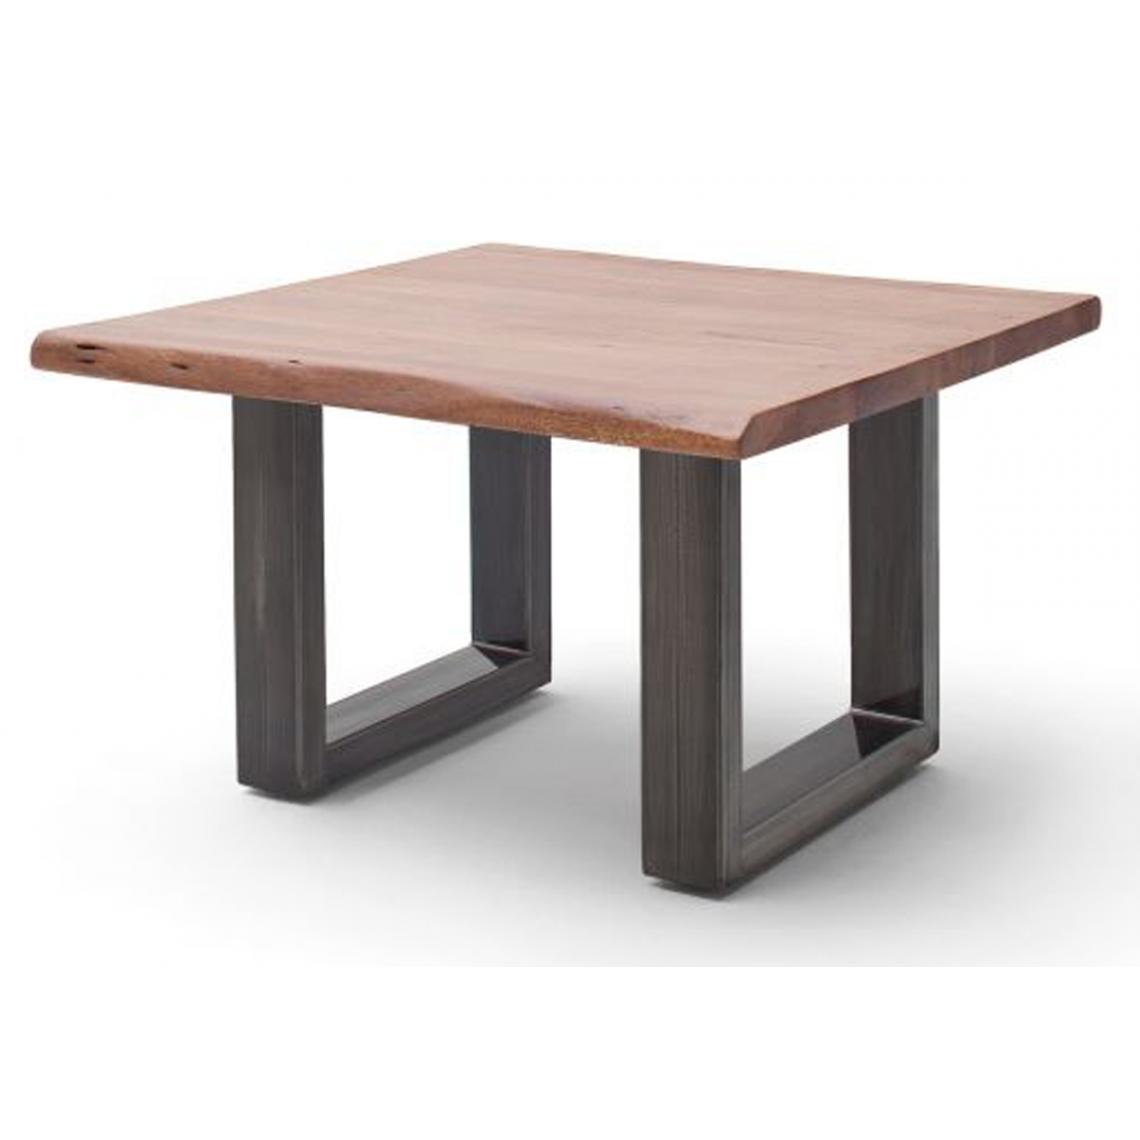 Pegane - Table basse en bois d'acacia massif noyer et acier antique - L.75 x H.45 x P.75 cm - Tables basses